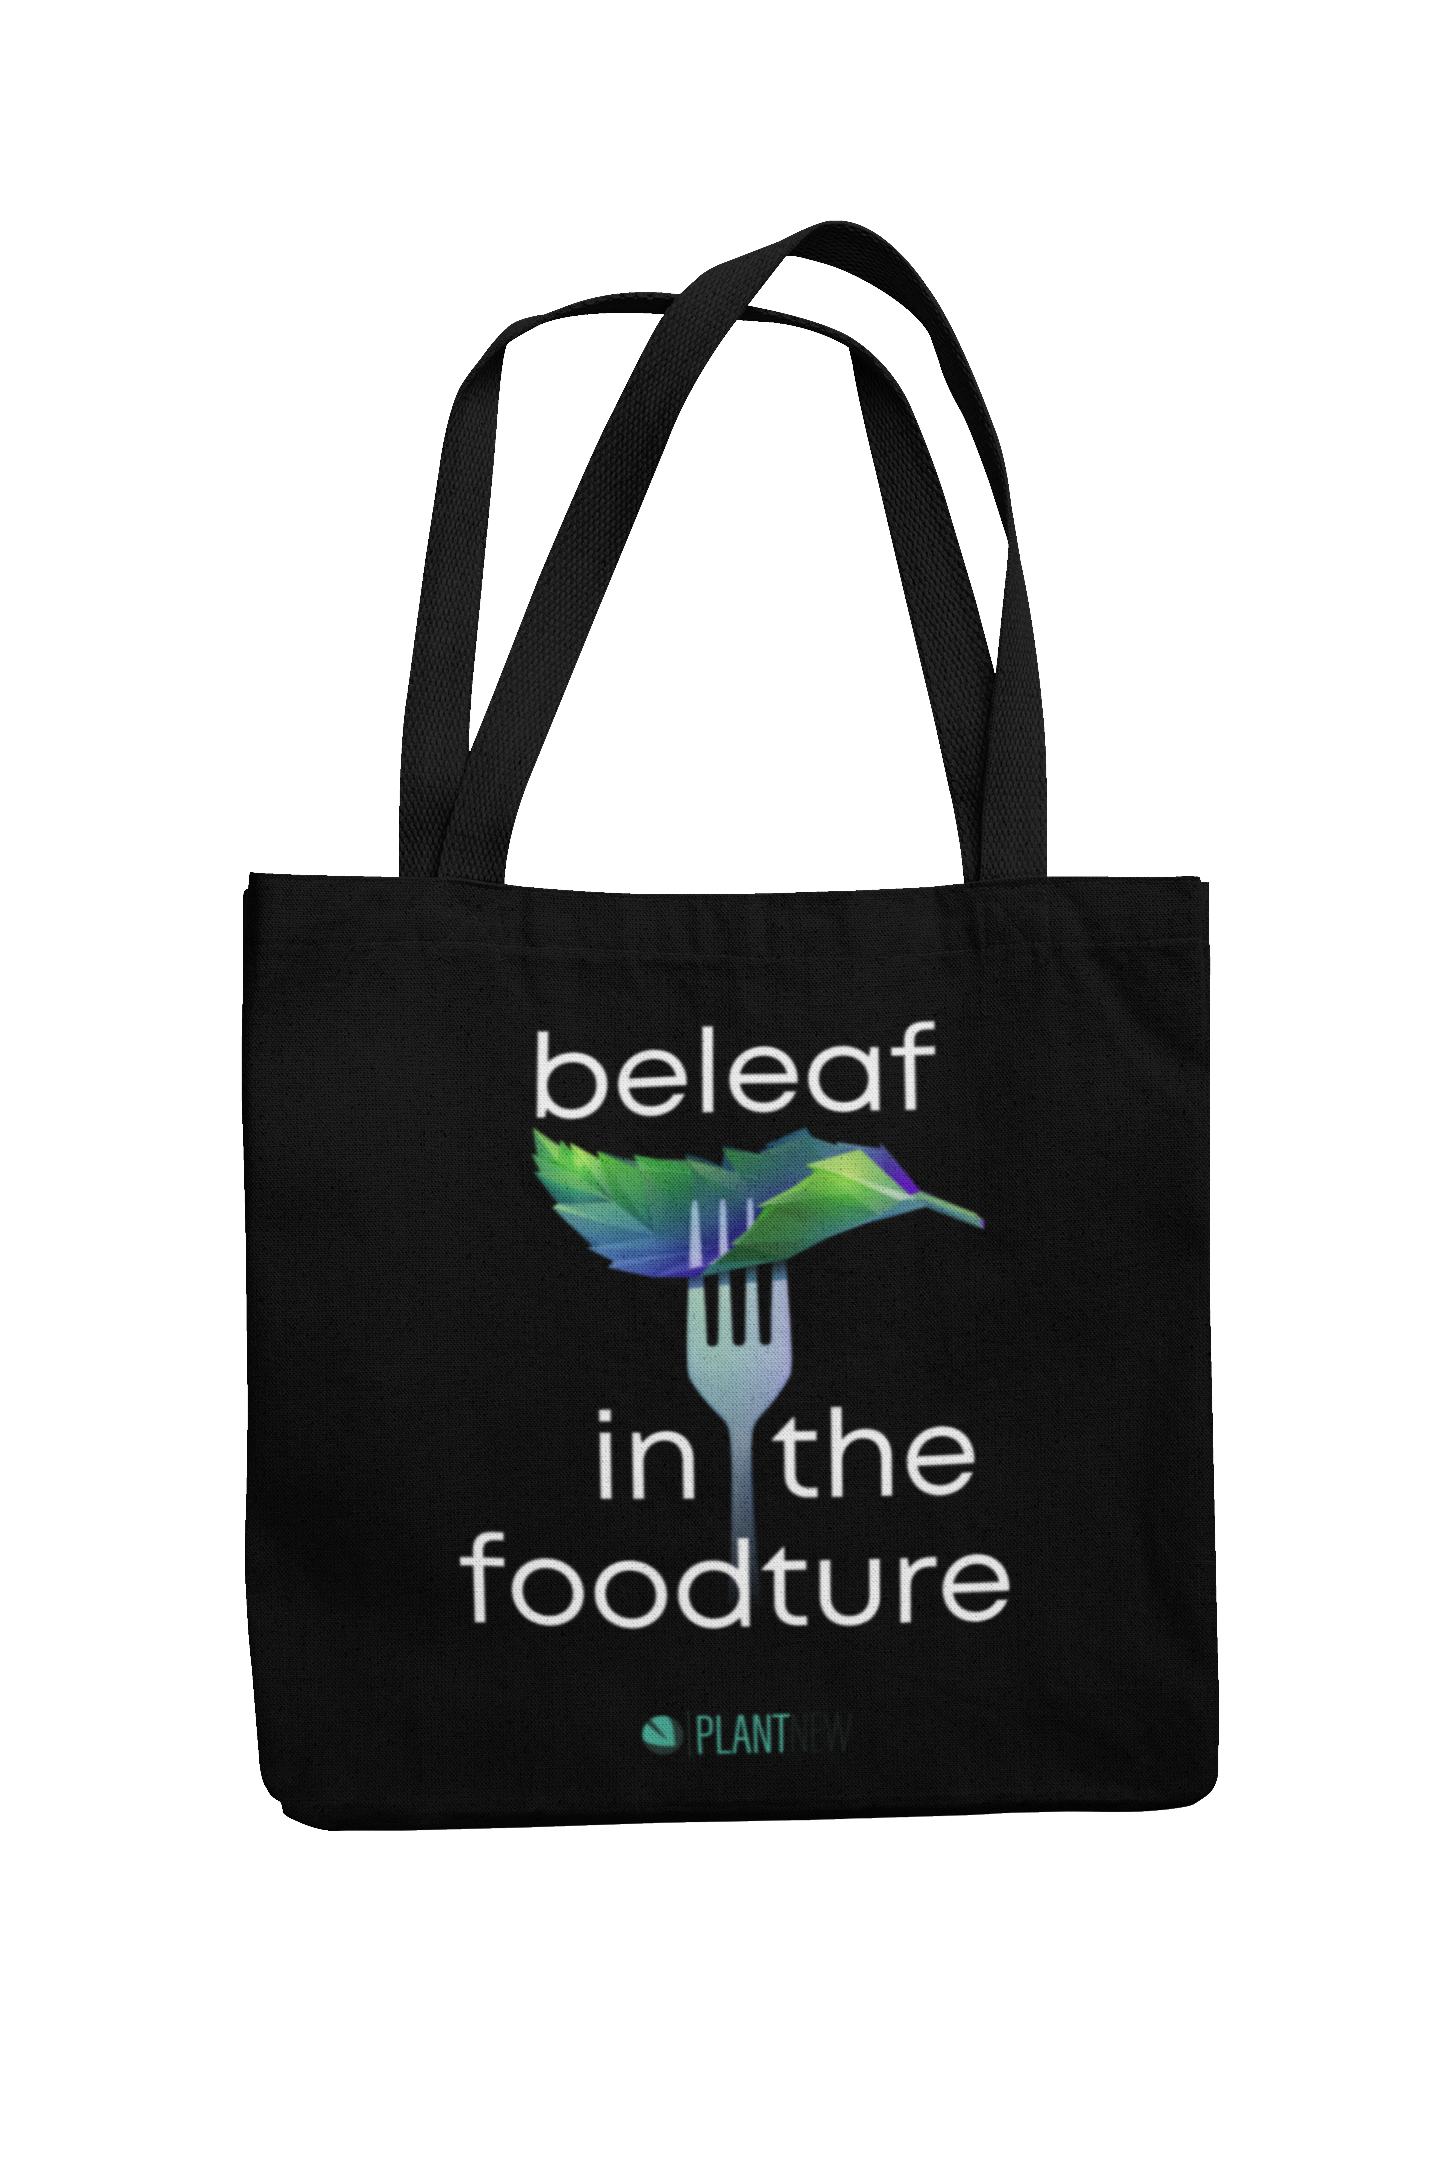 beleaf in the foodture - Tote Bag